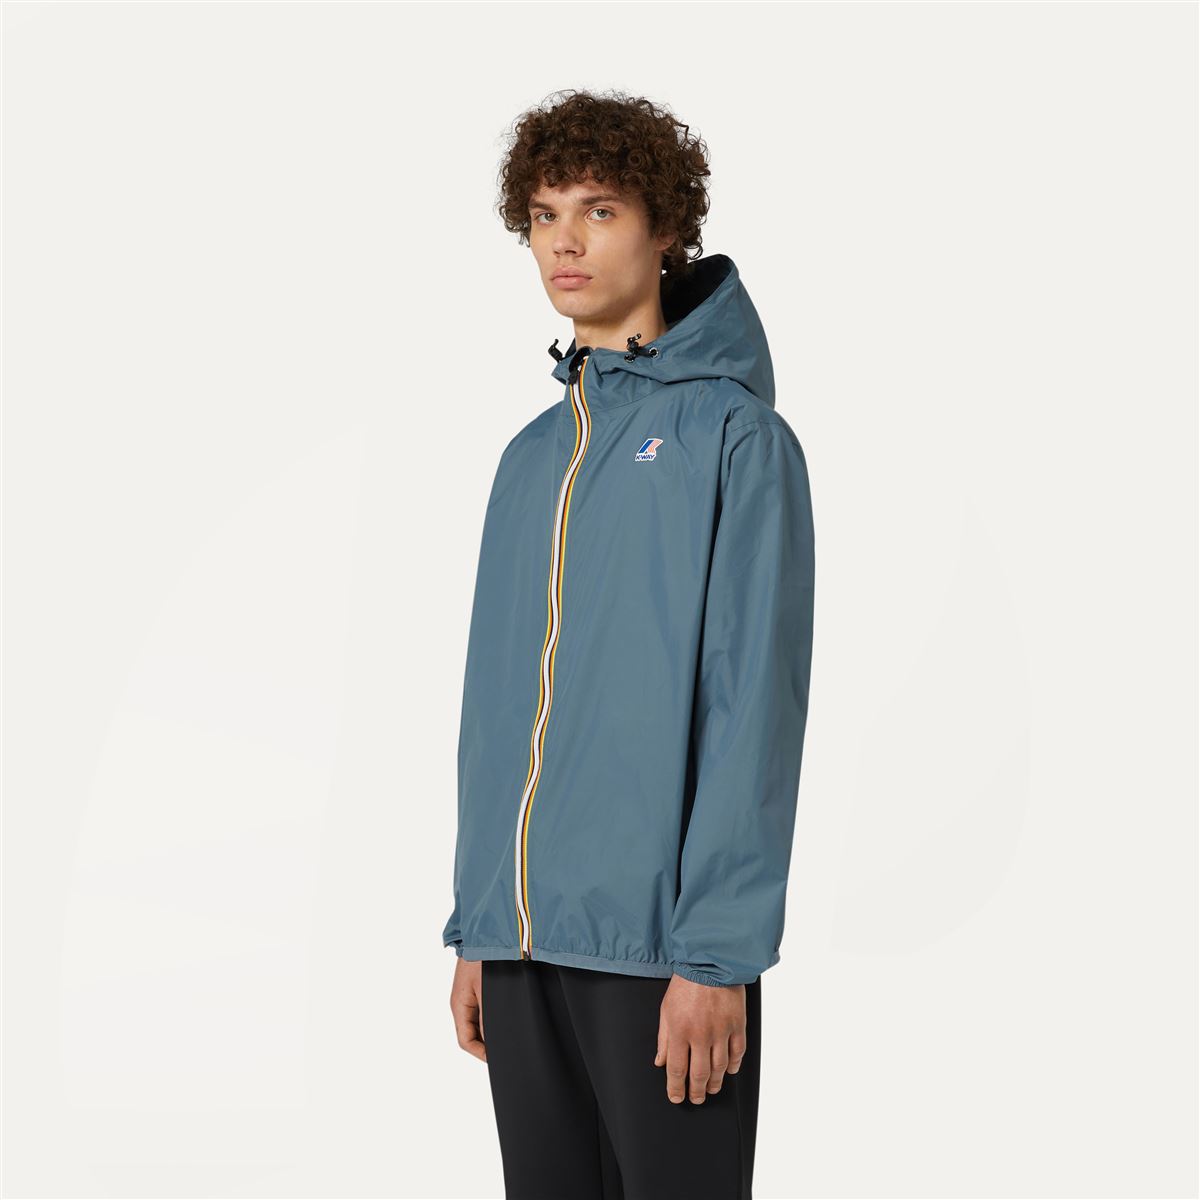 Claude - Unisex Packable Full Zip Waterproof  Rain Jacket in Grey Everest